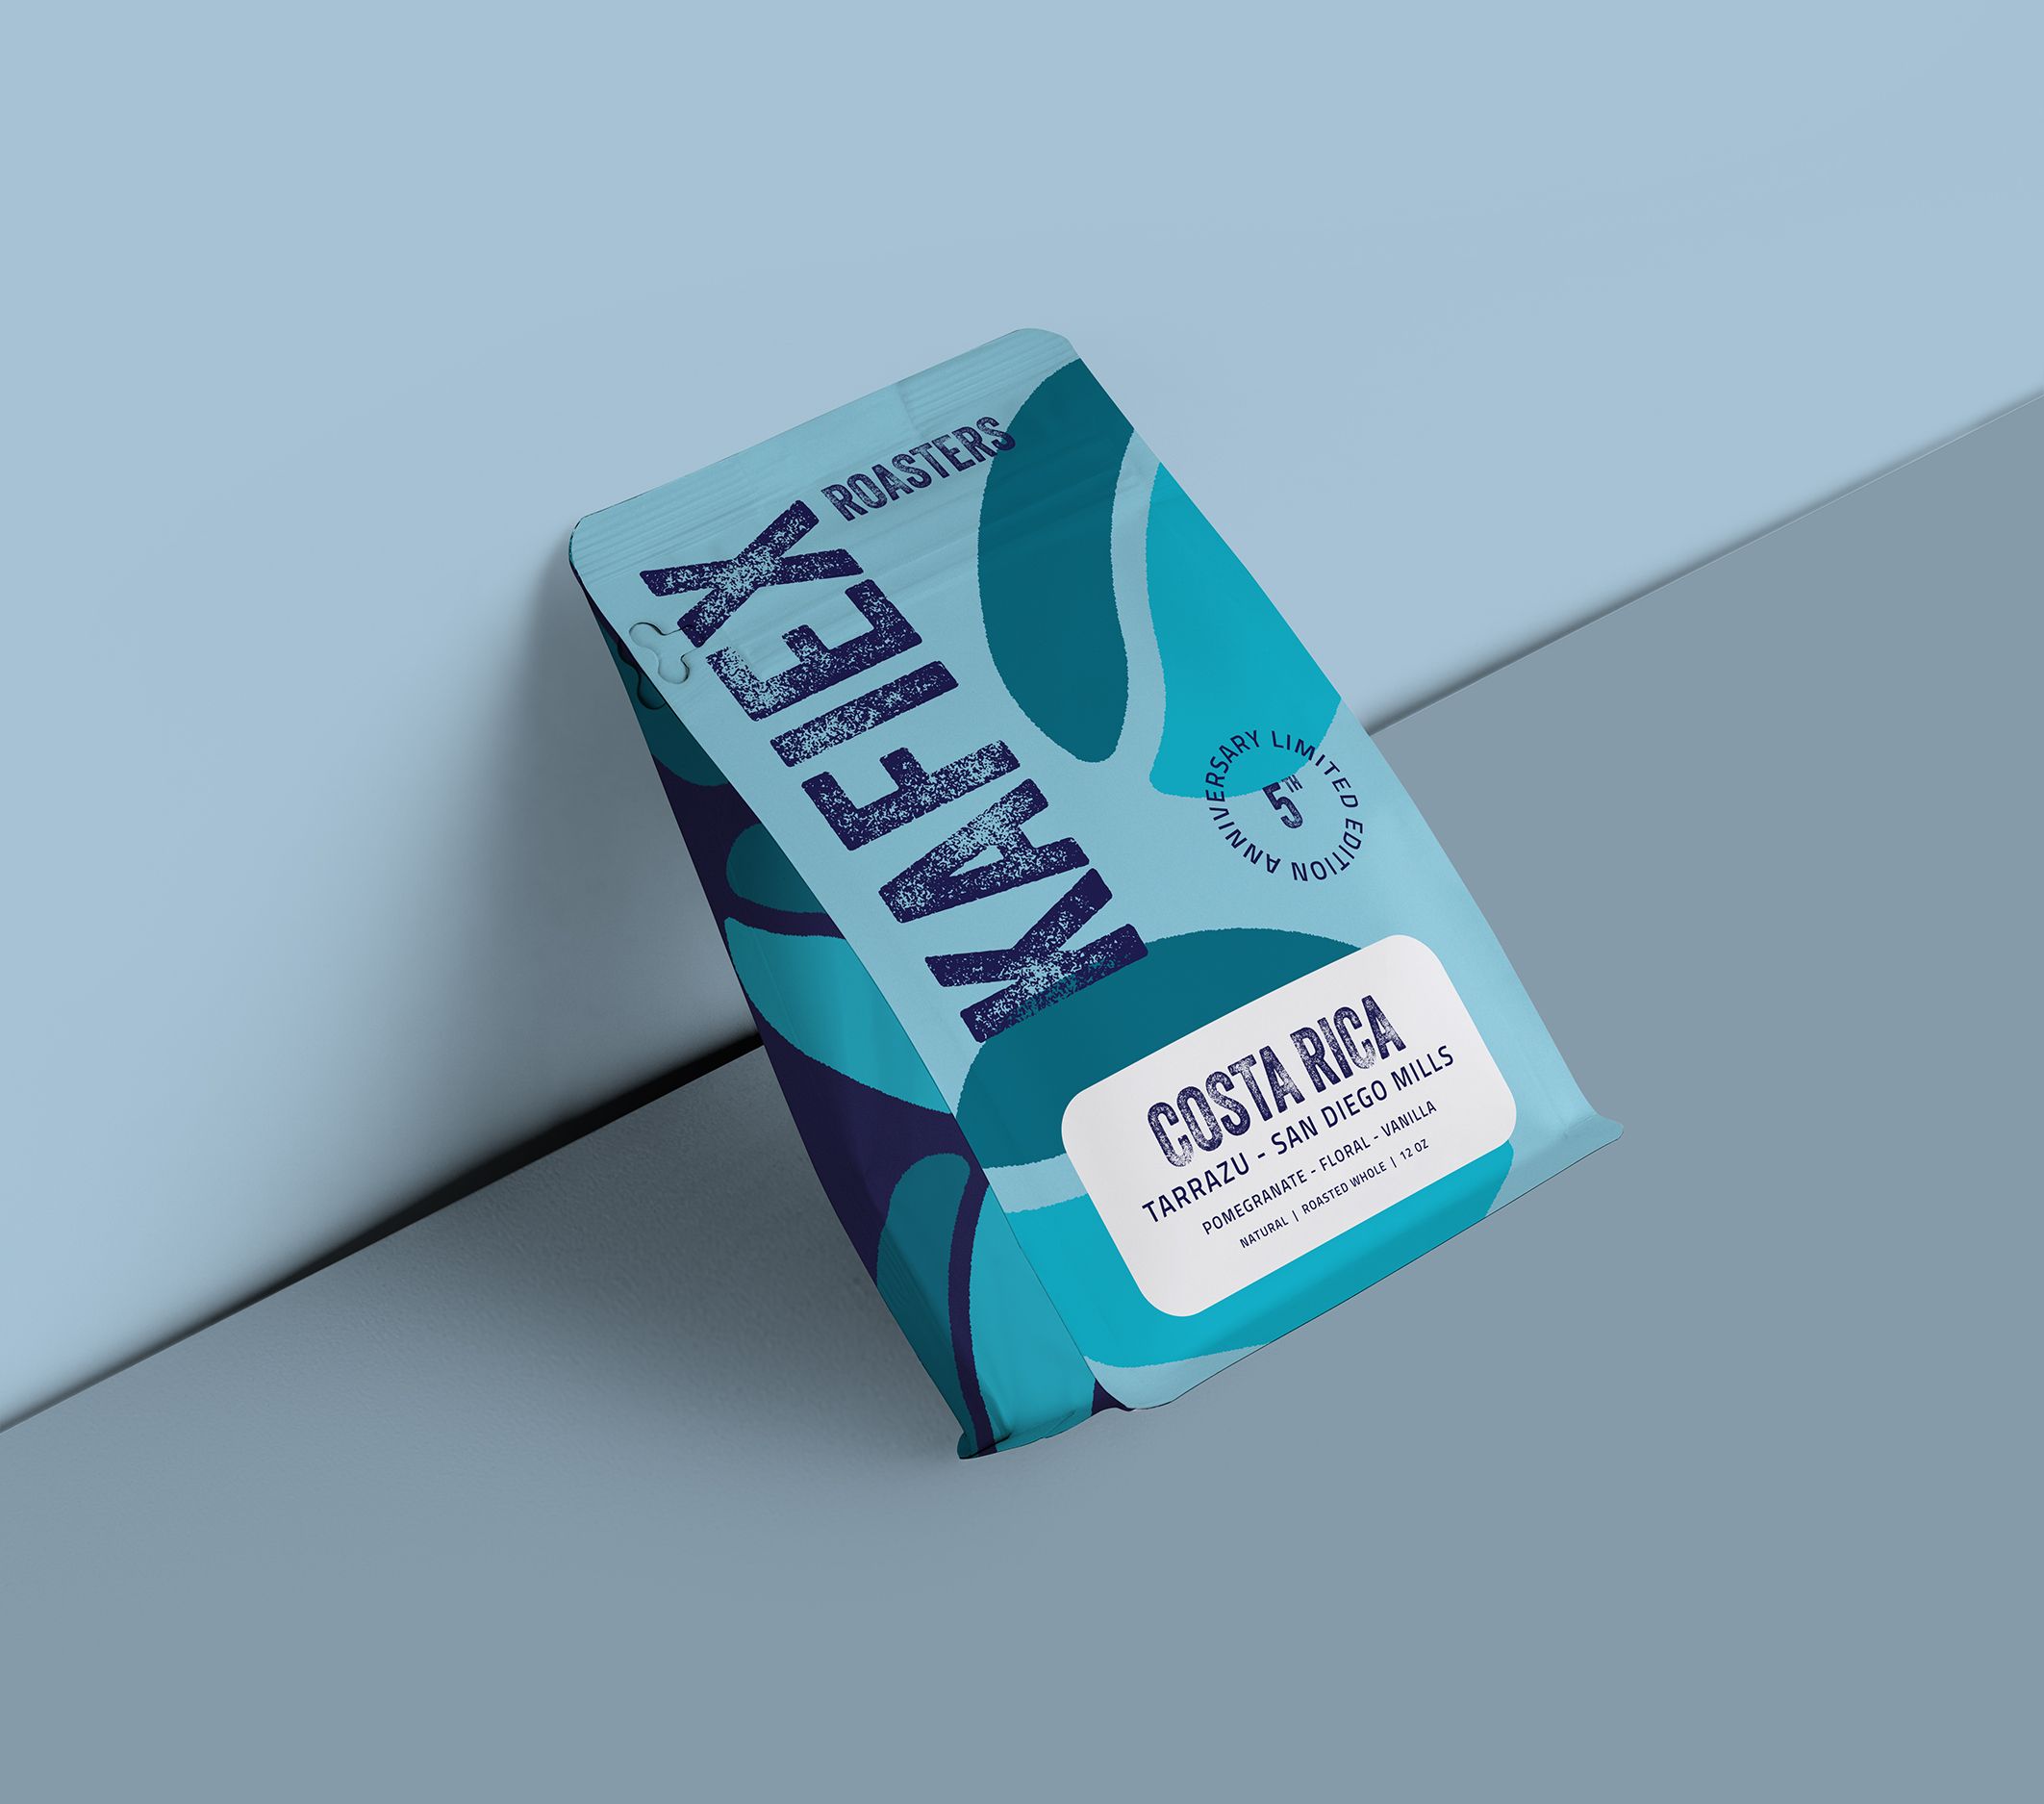 Kafiex Packaging Design 3 of 3